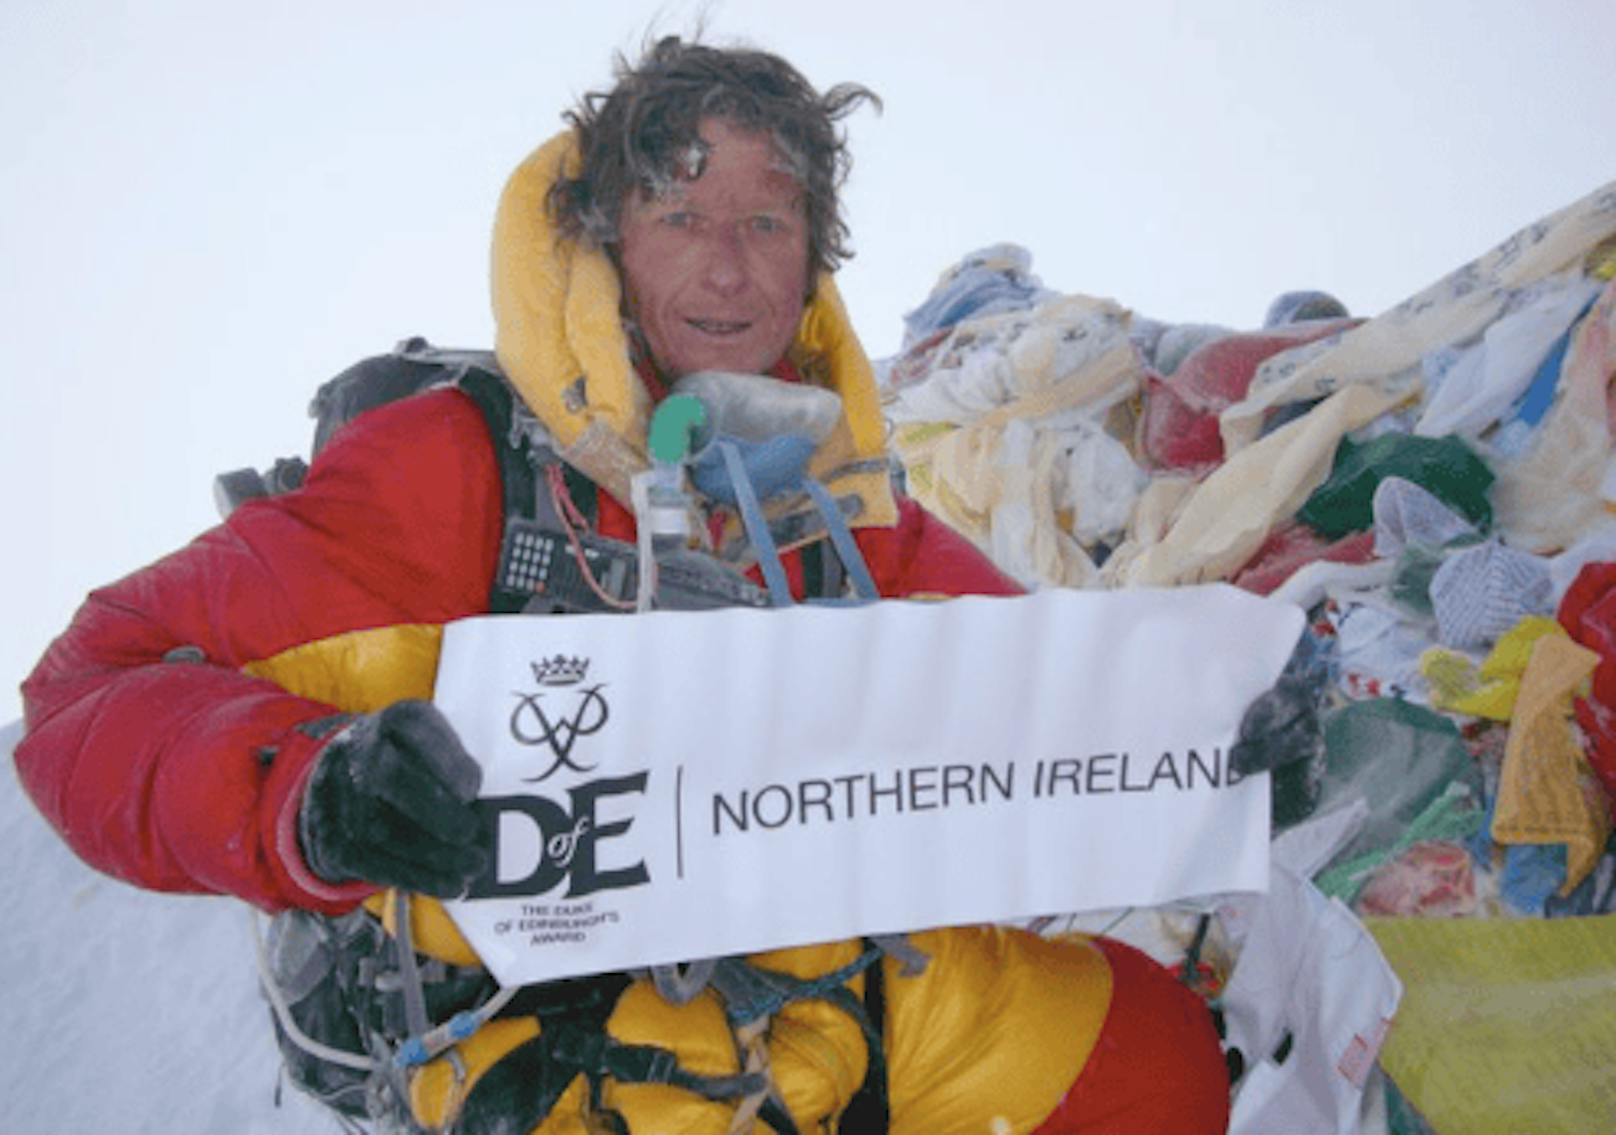 "Hat für Berge gelebt" – Noel Hanna im Himalaya gestorben